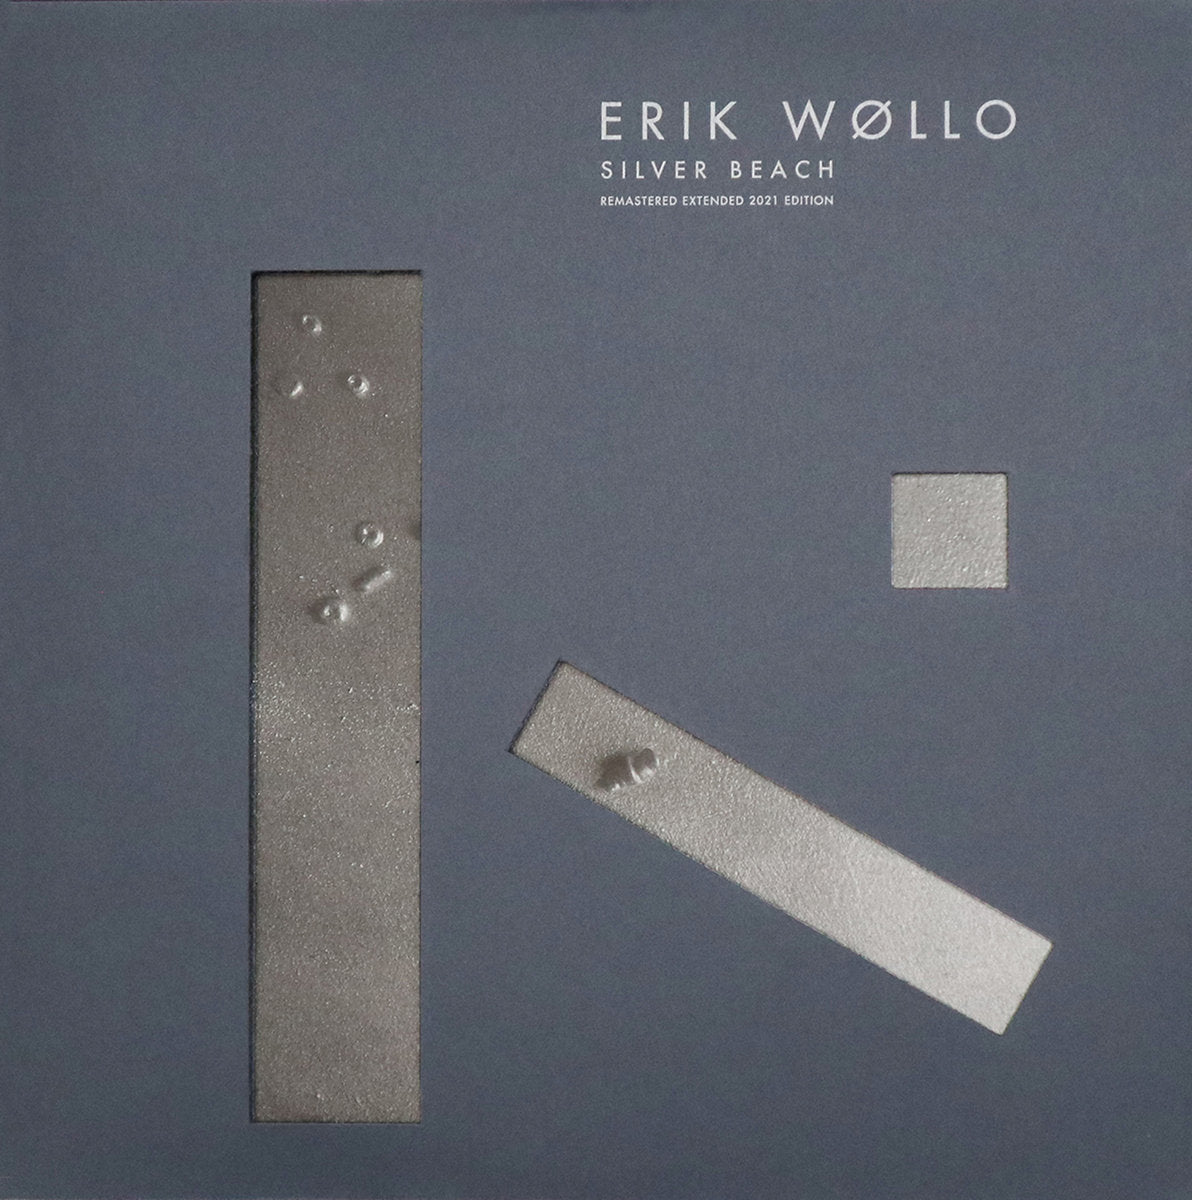 ERIK WØLLO - "SILVER BEACH (EXPANDED EDITION)" 2xLP